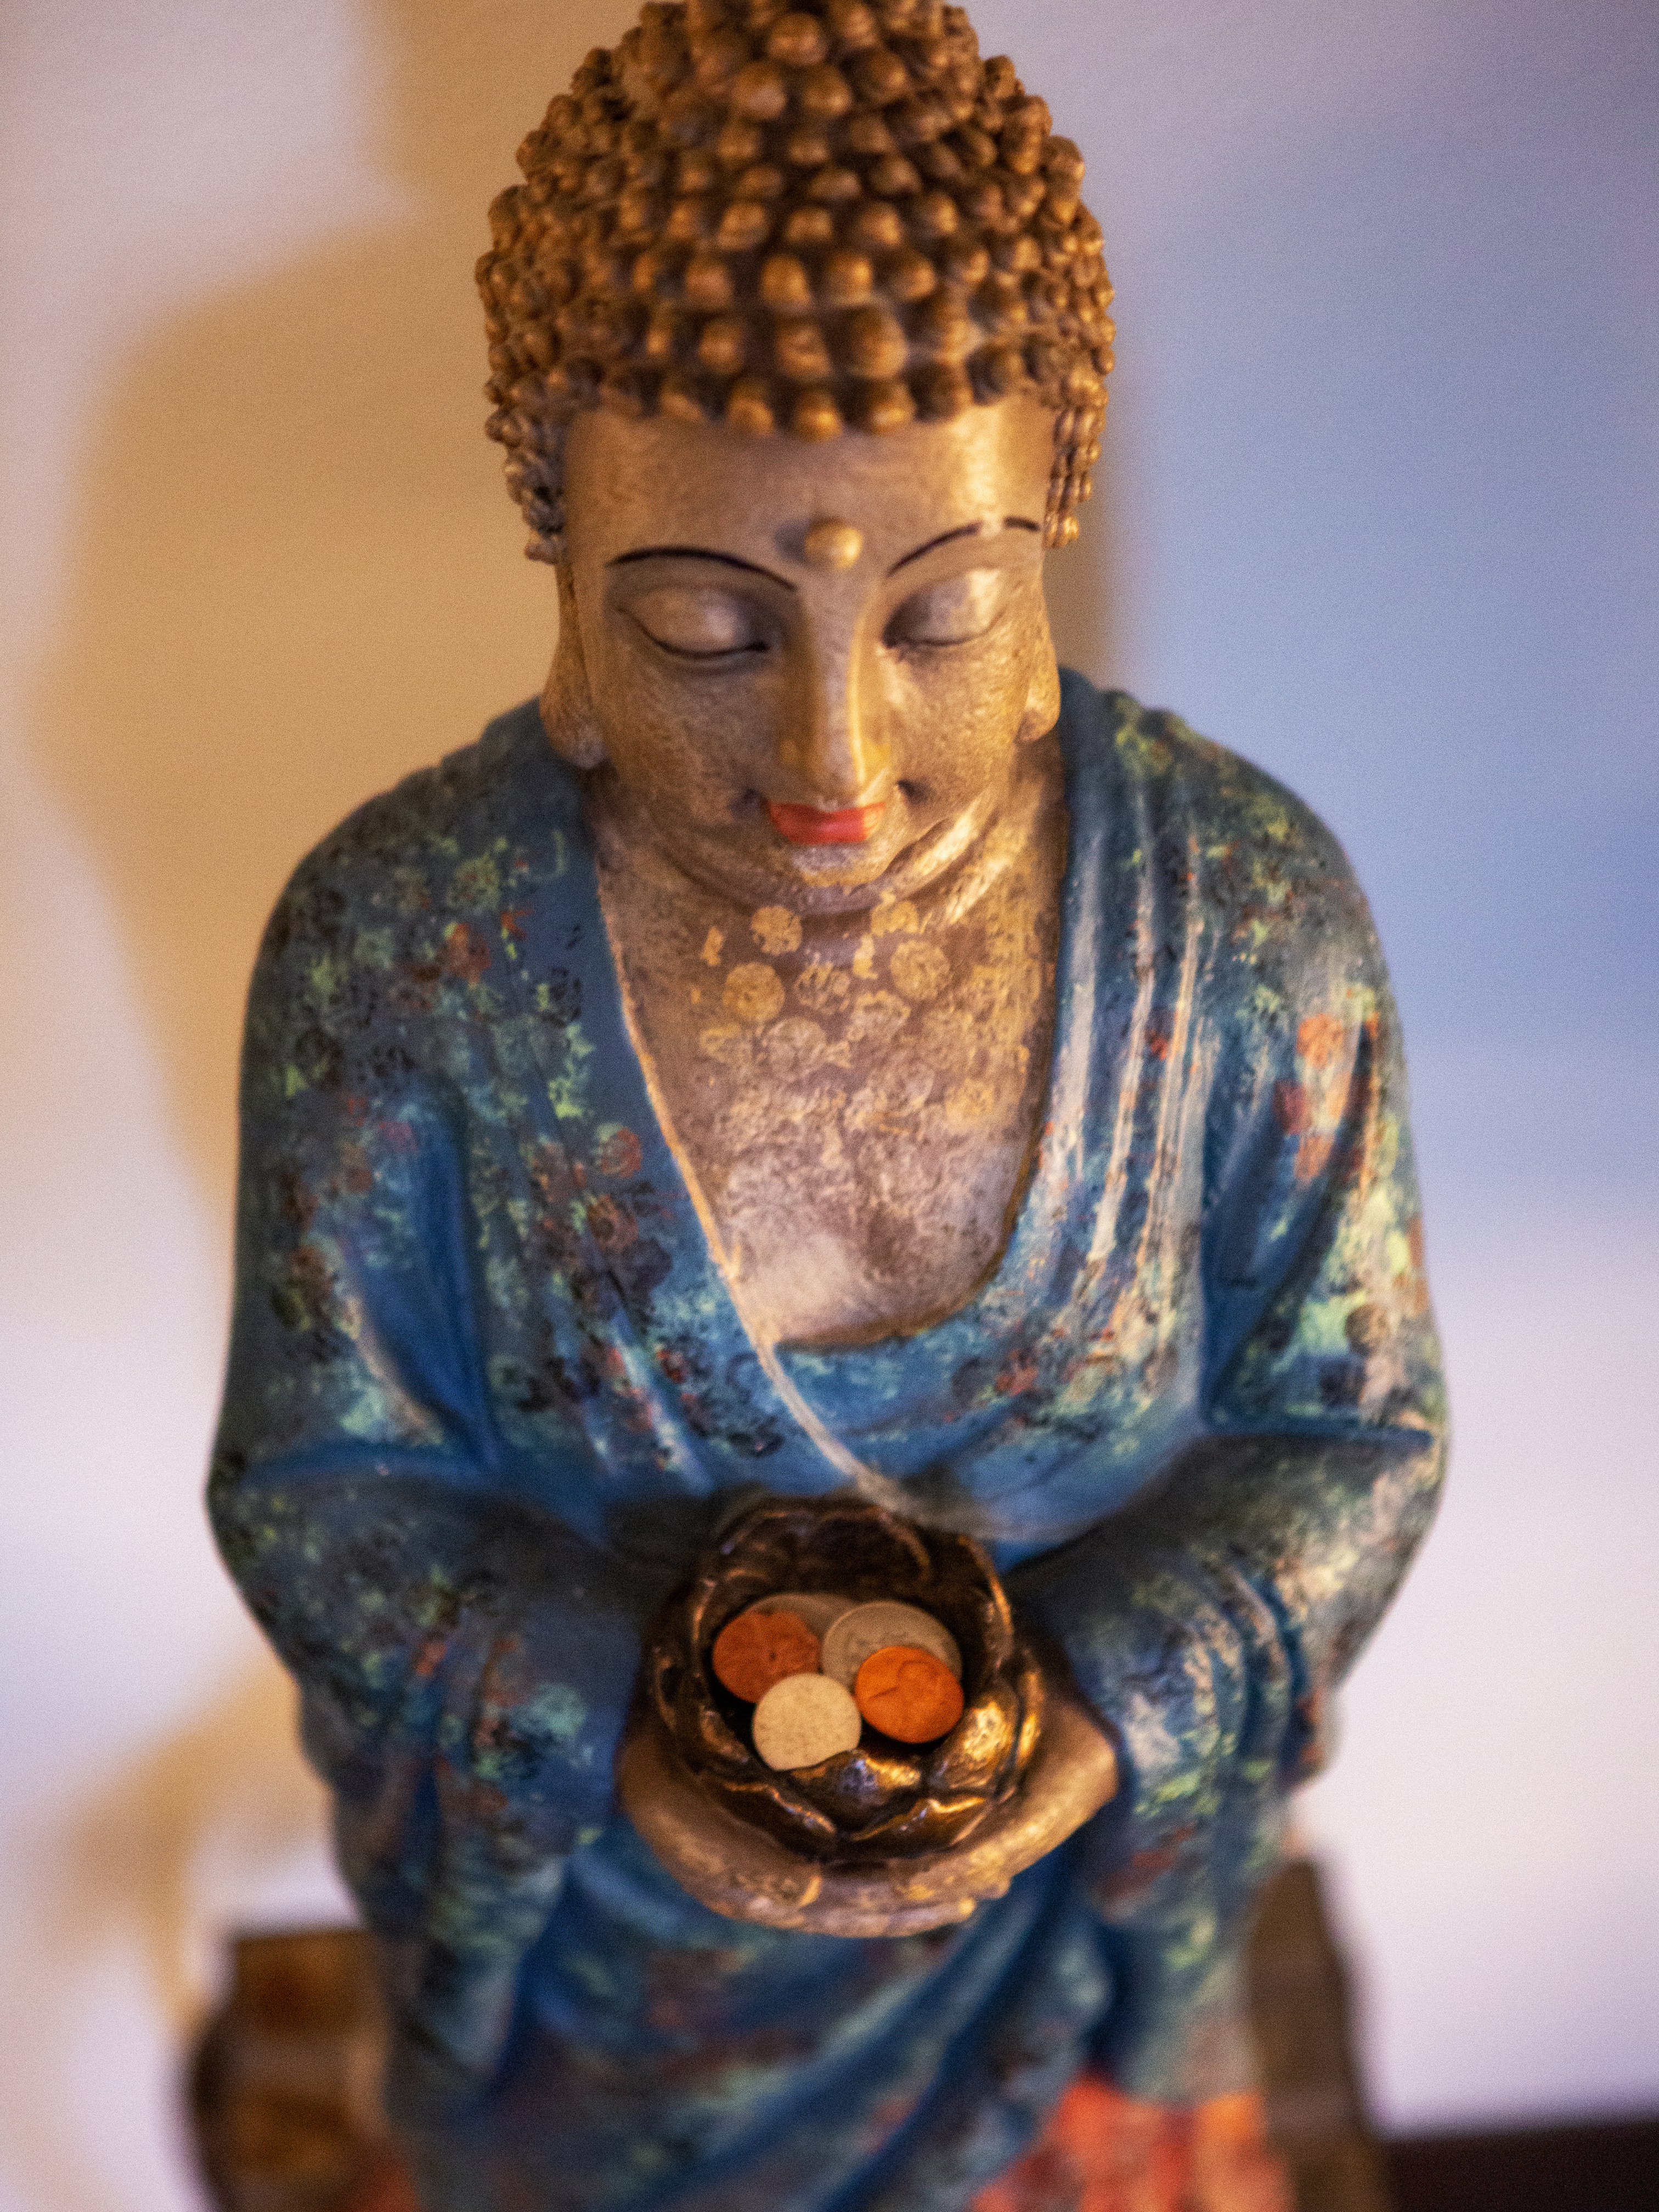 A statue of buddha holding a bird nest.